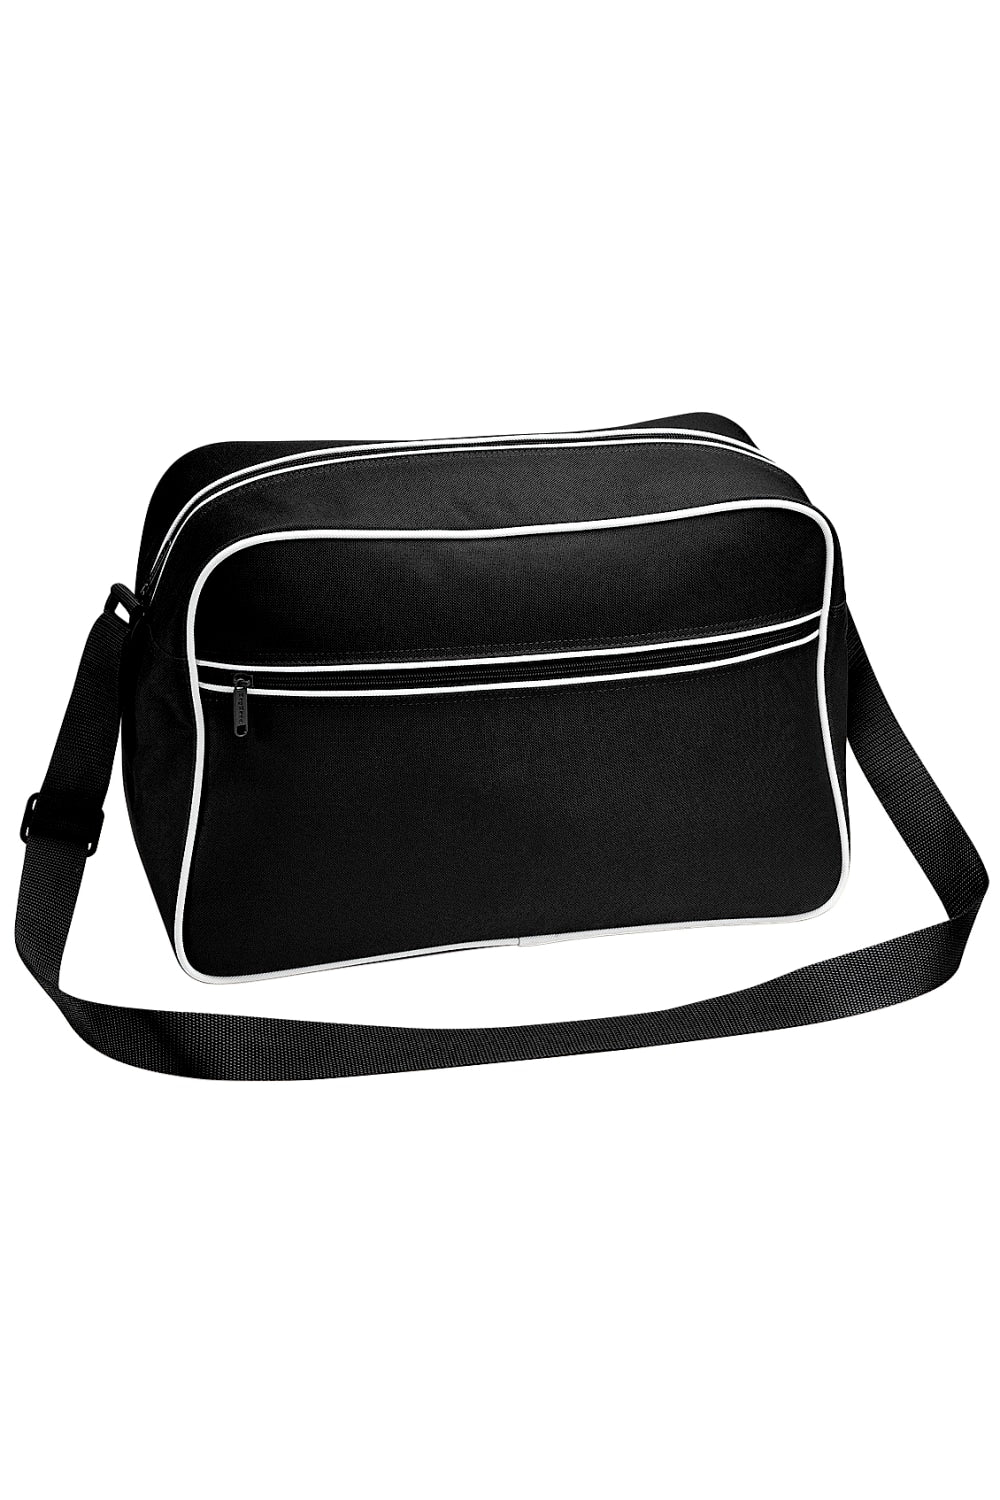 Retro Adjustable Shoulder Bag (18 Liters) (Pack Of 2) - Black/White